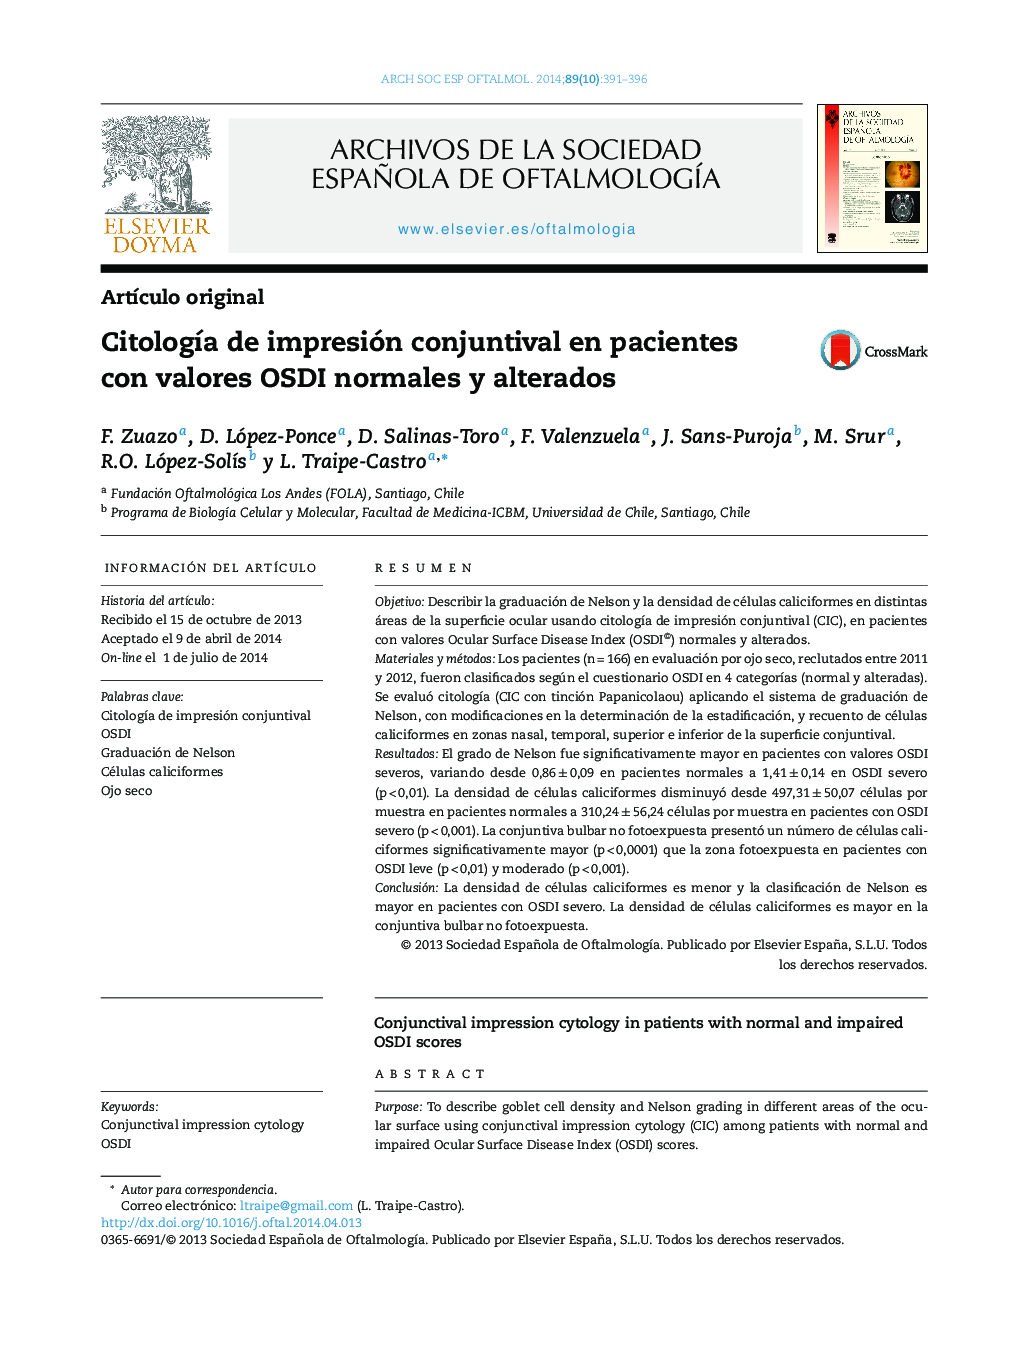 Citología de impresión conjuntival en pacientes con valores OSDI normales y alterados